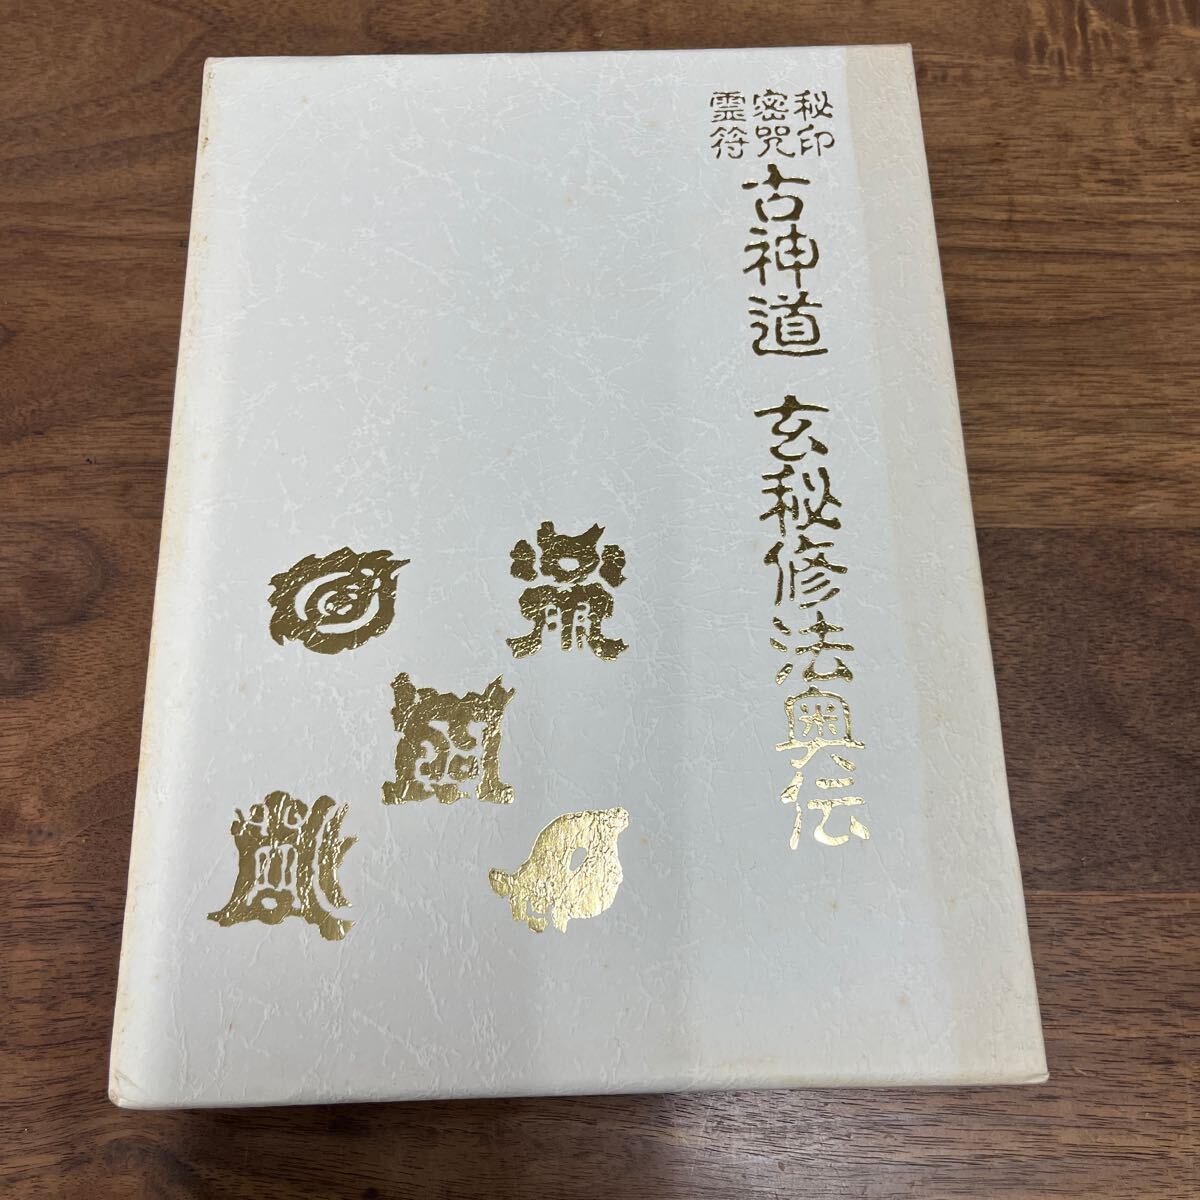 M-1126*60 размер . печать .... старый синтоизм ... закон внутри . Omiya .. Hachiman книжный магазин эпоха Heisei 3 год первая версия выпуск обычная цена 12,000 иен 